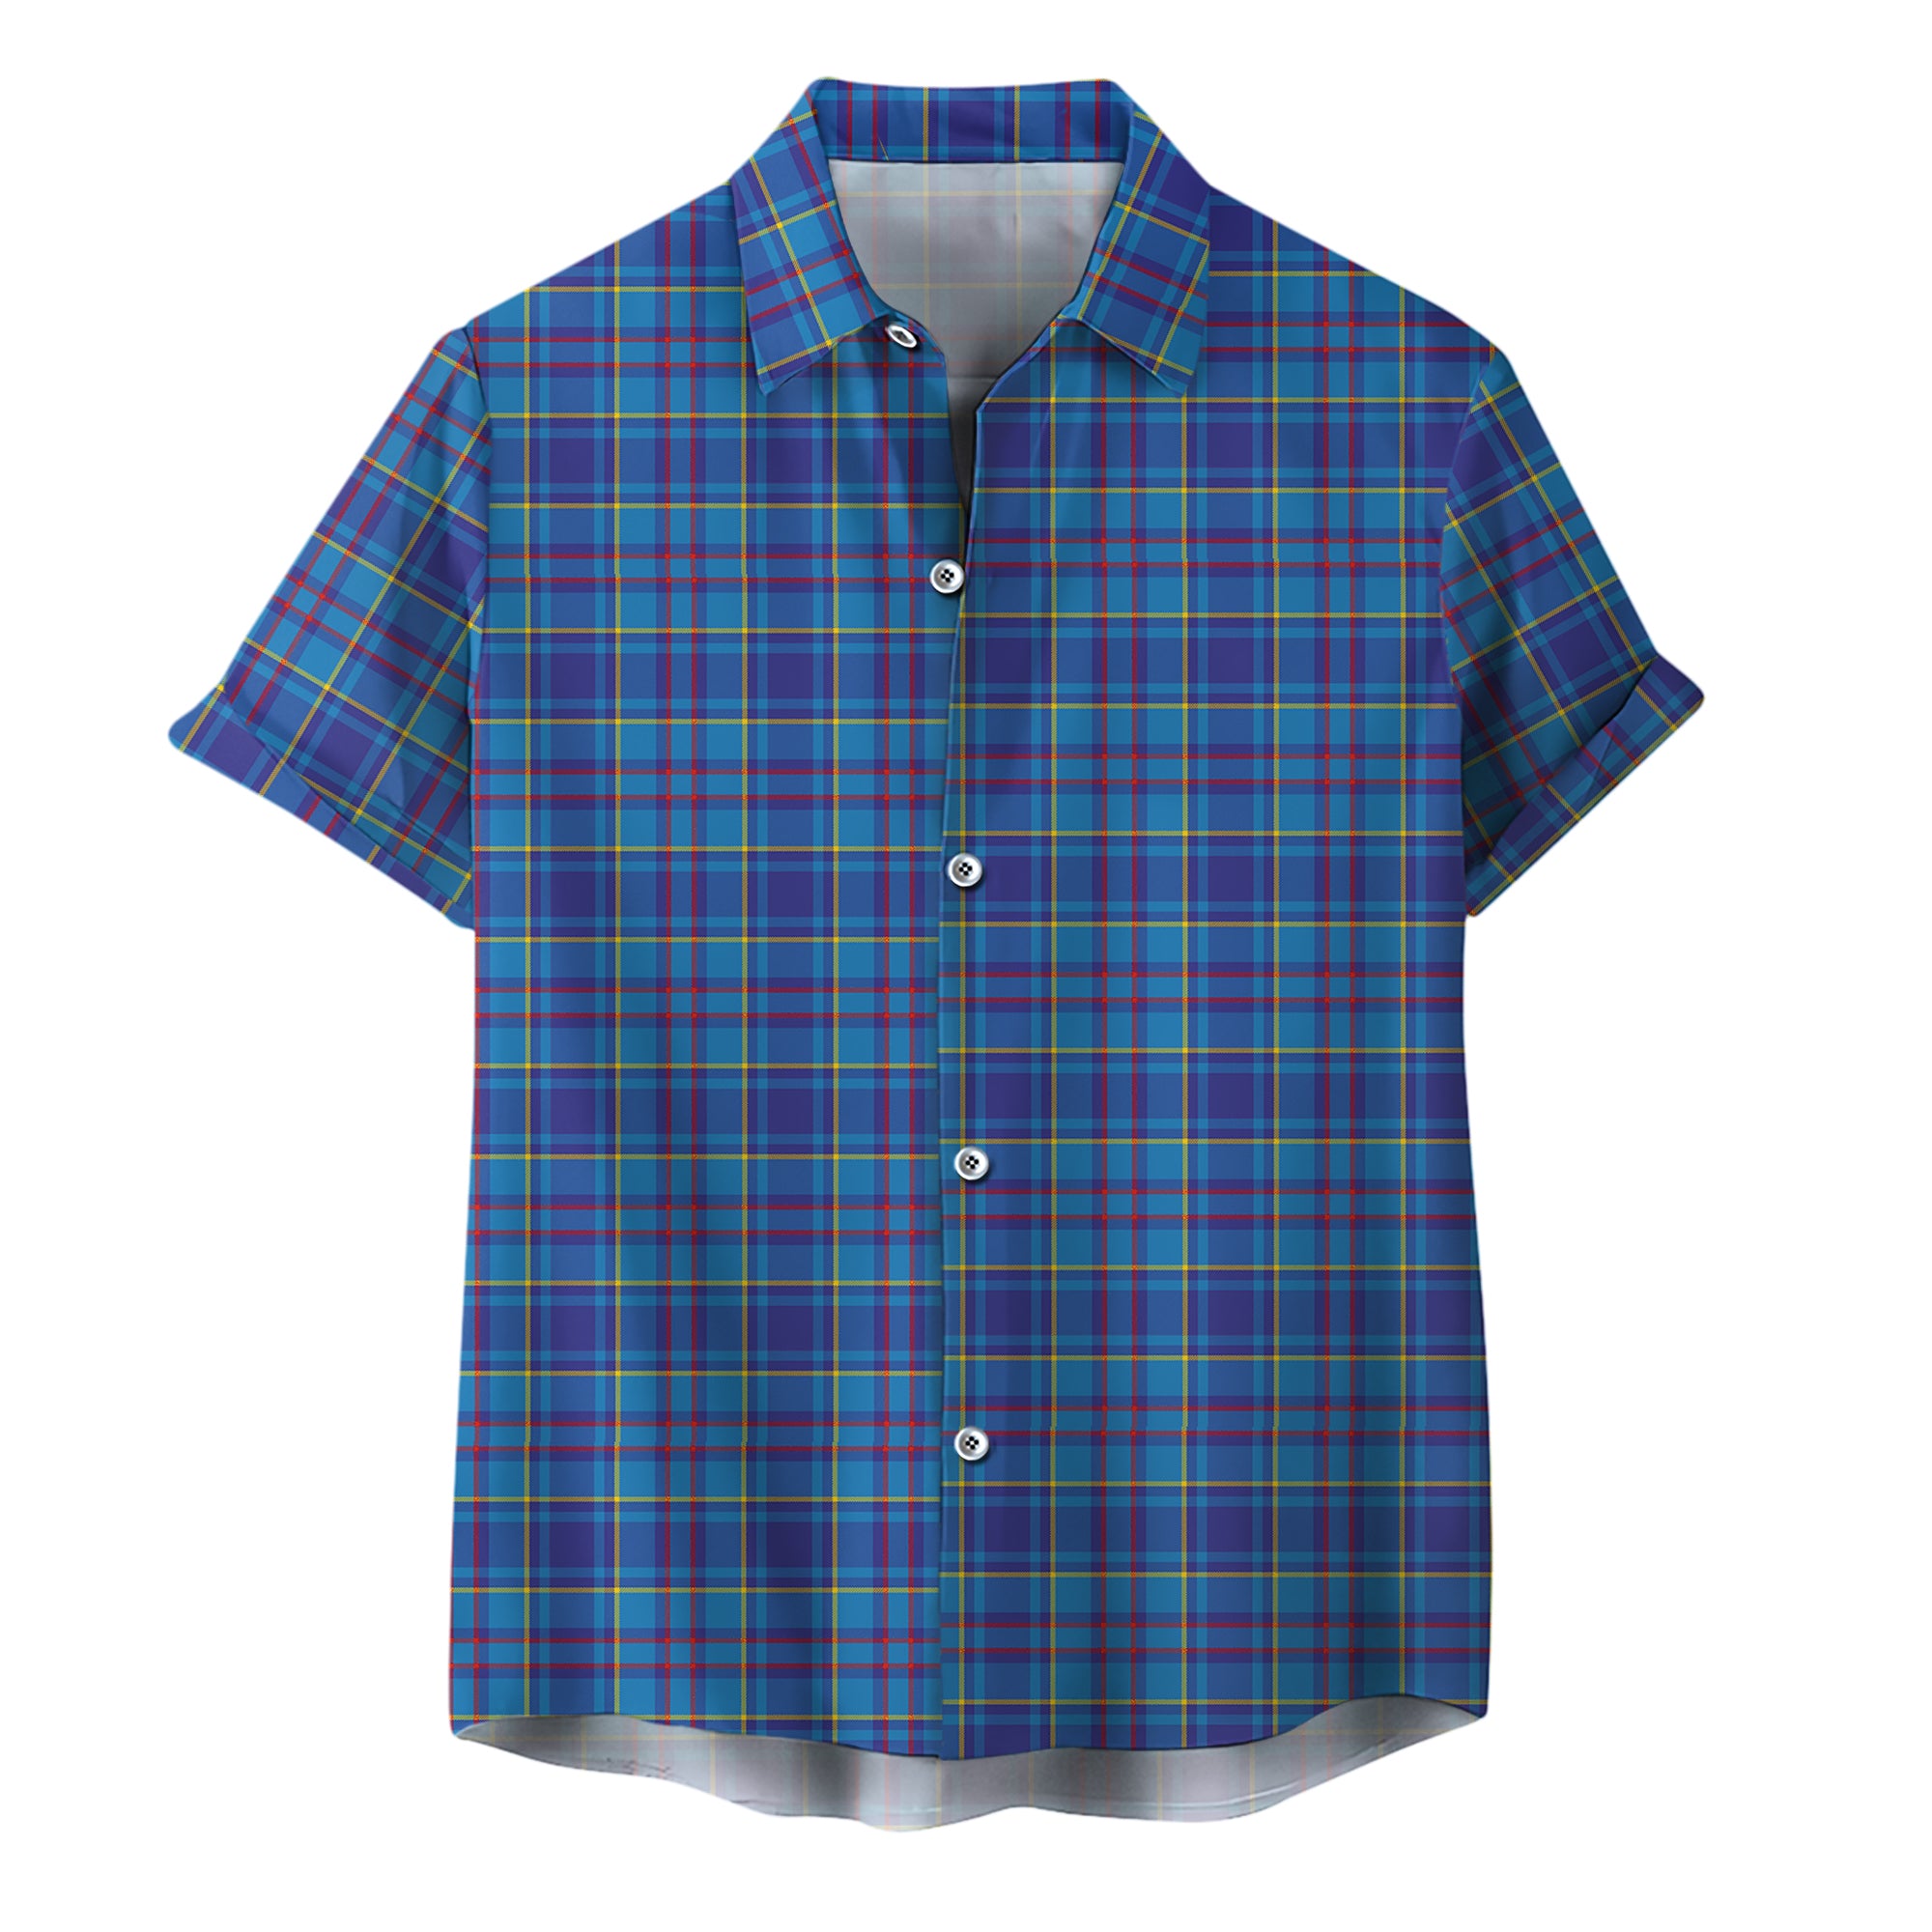 scottish-mercer-modern-clan-tartan-hawaiian-shirt